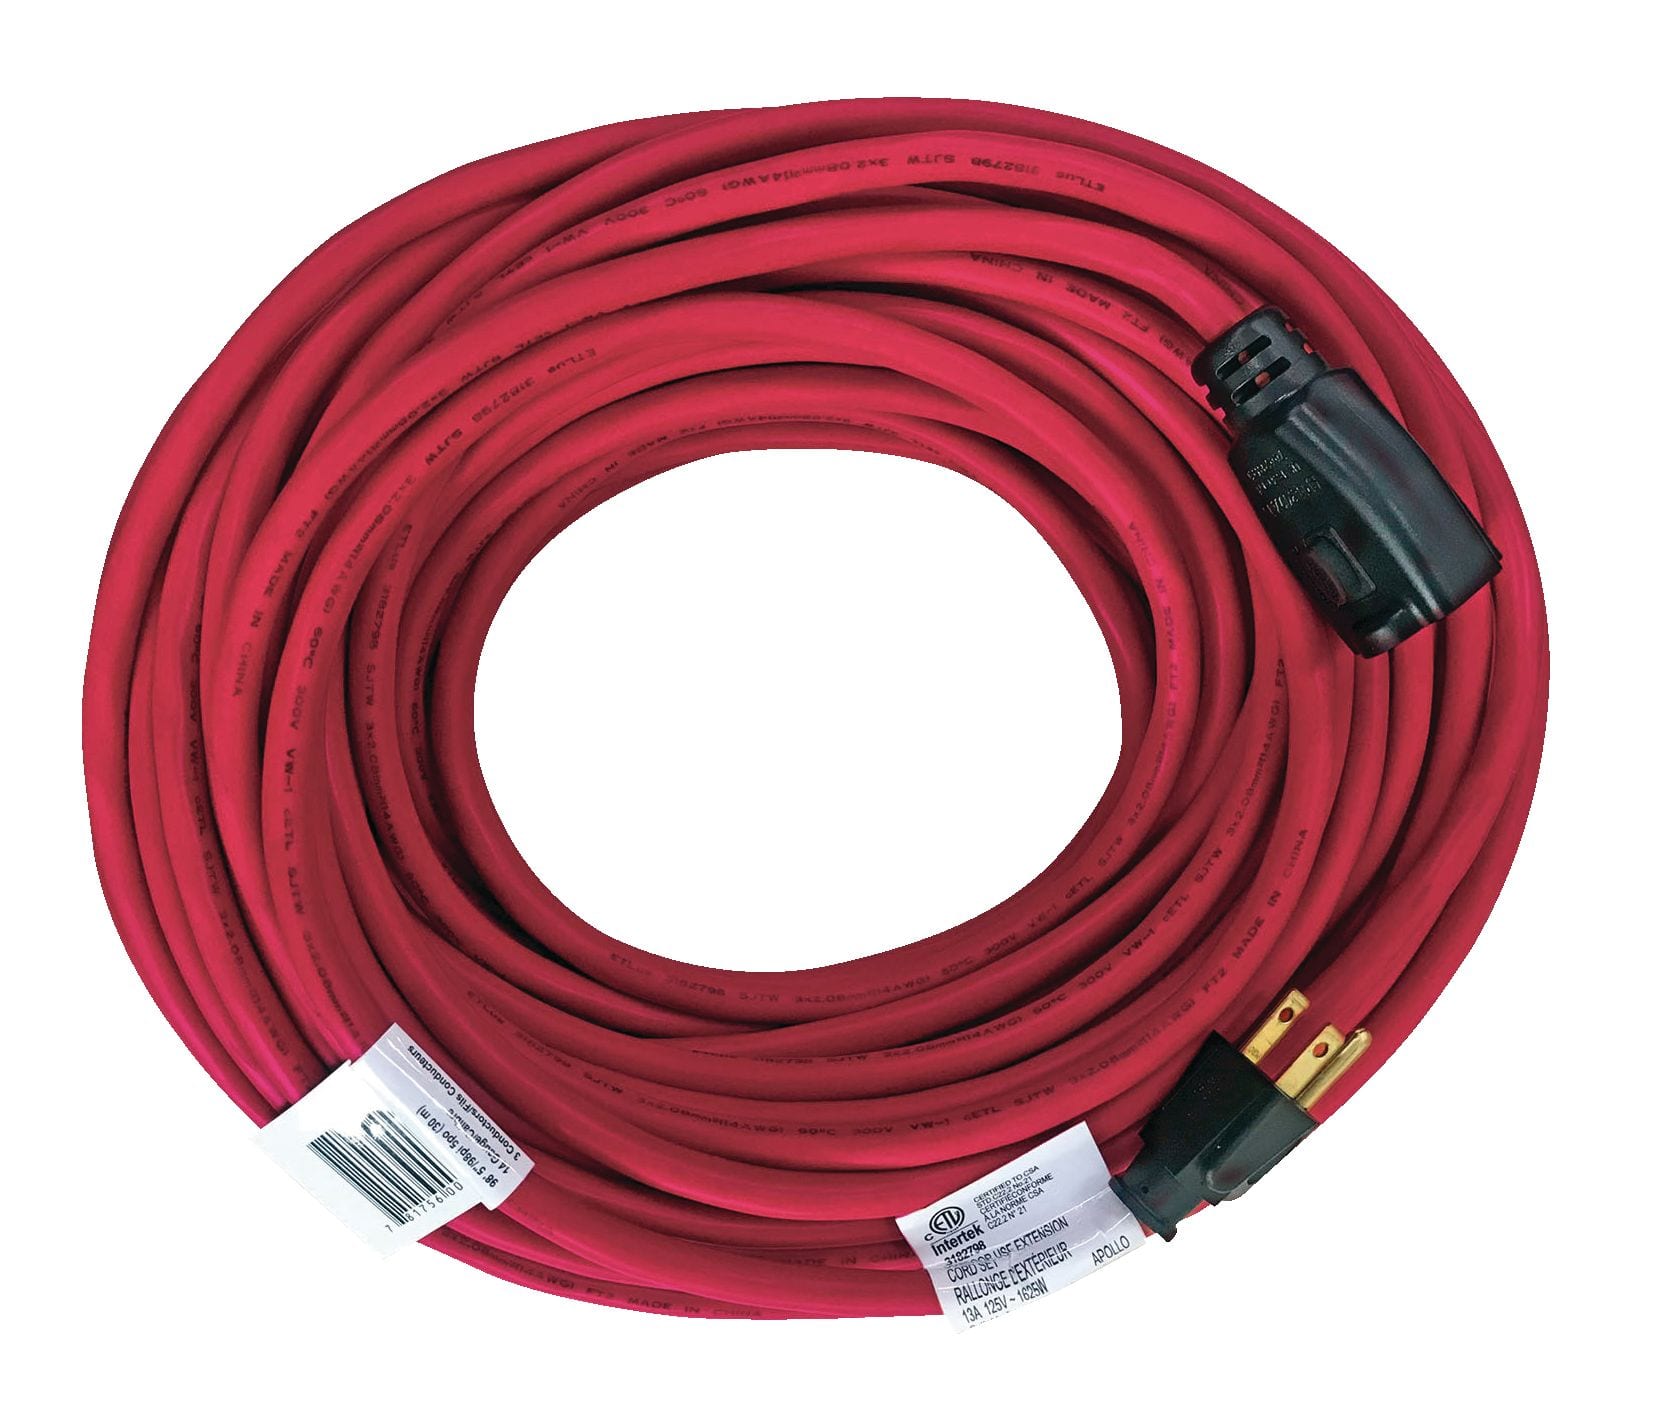 100 ft. 14 Gauge 13 Amps Indoor & Outdoor Medium Duty Extension Cord,  Red/Black